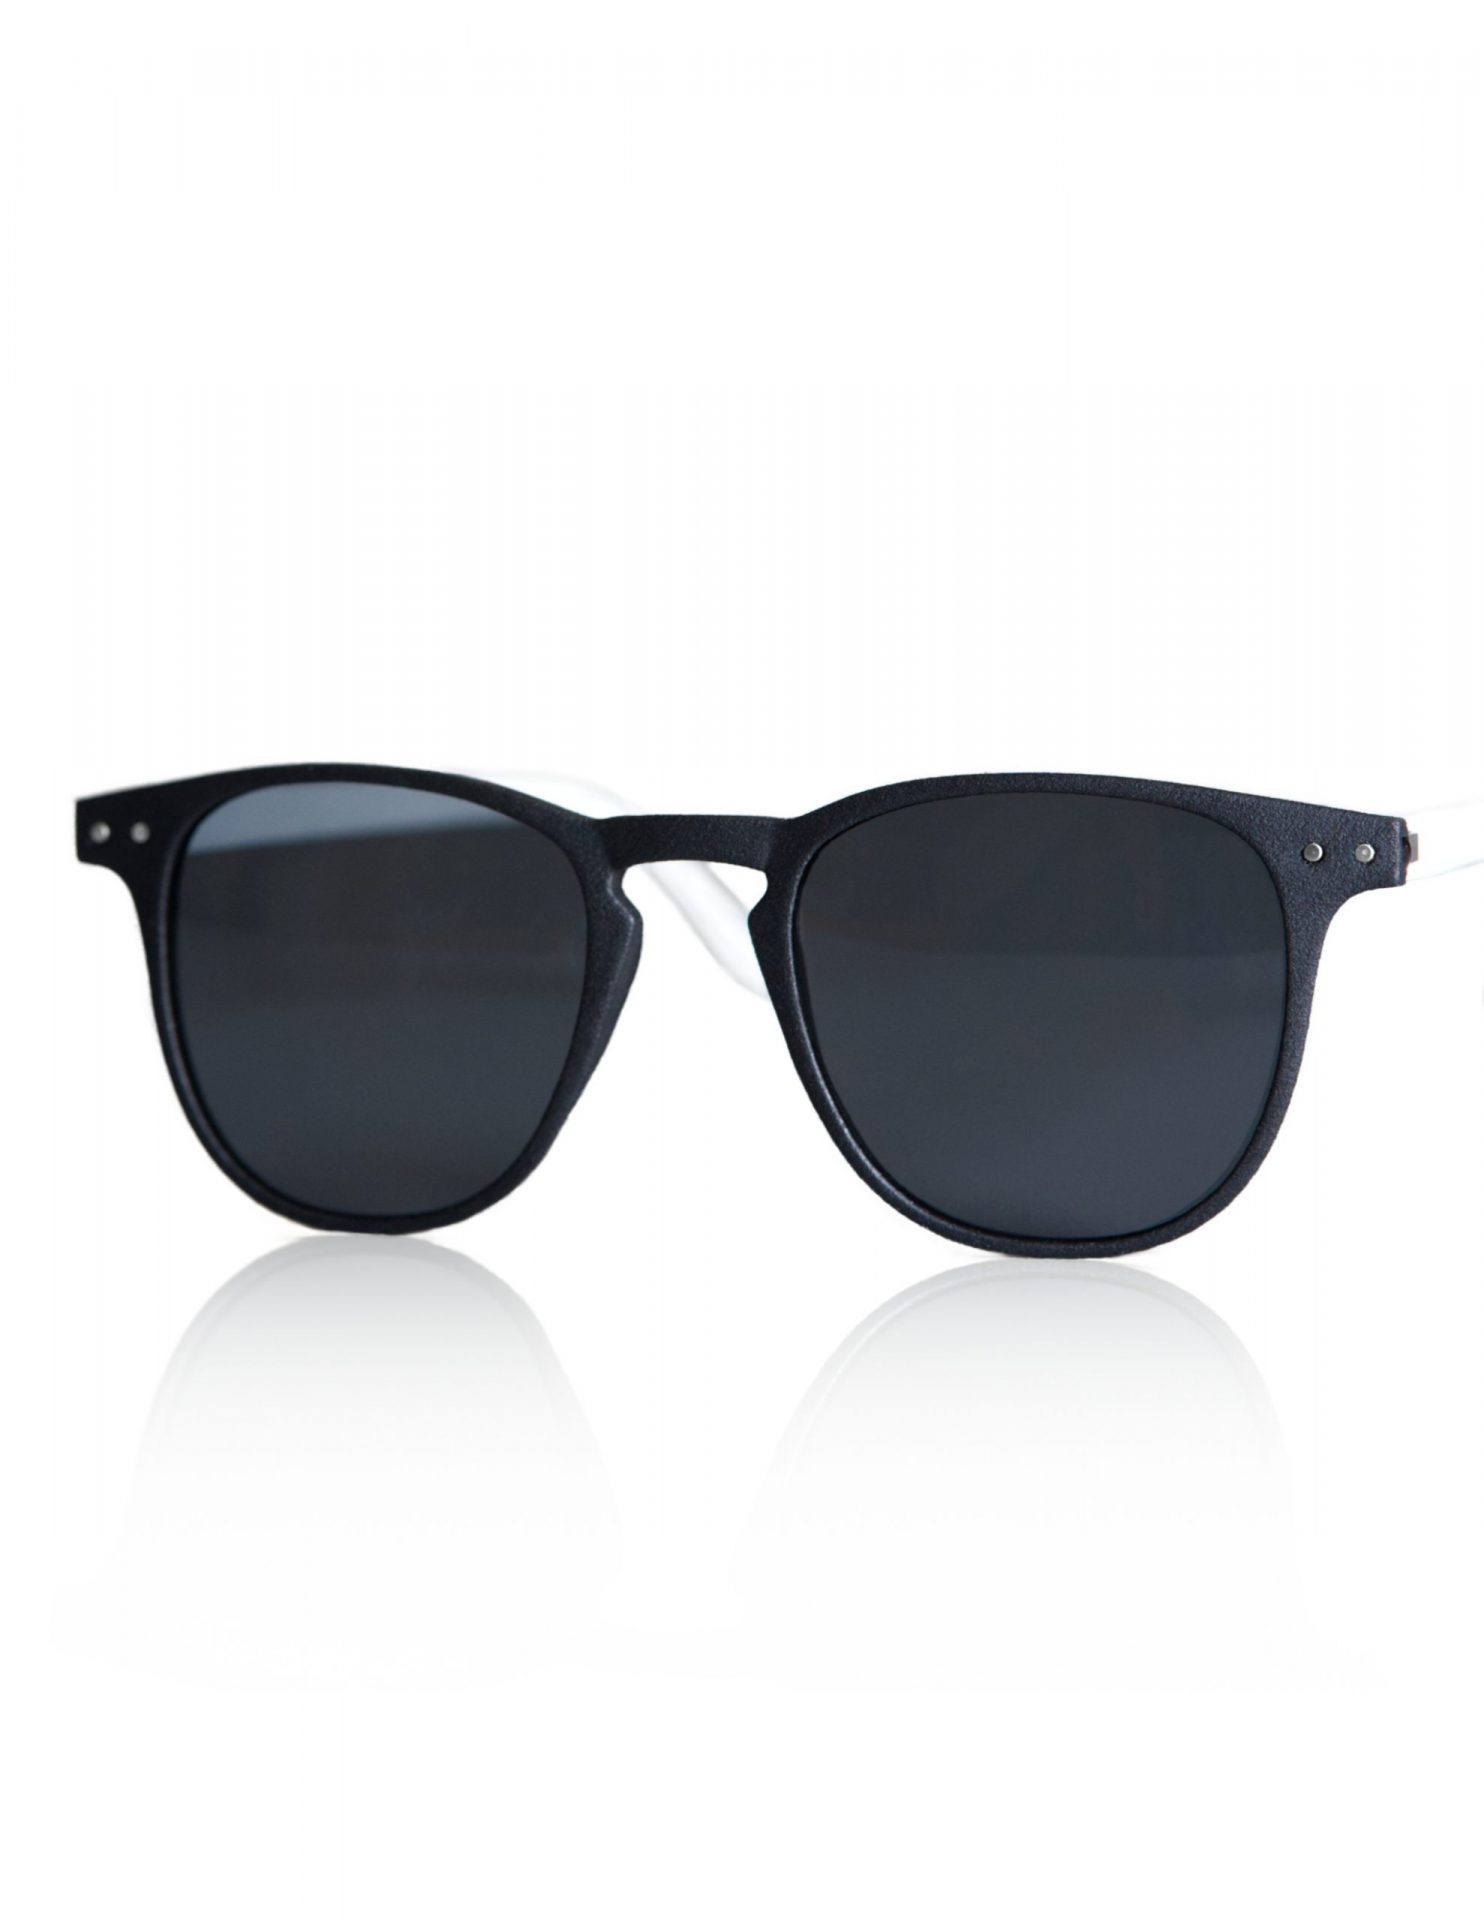 Uadia lunettes éthiques françaises Produit Lunettes Xinlei black sunglasses summer eco friendly